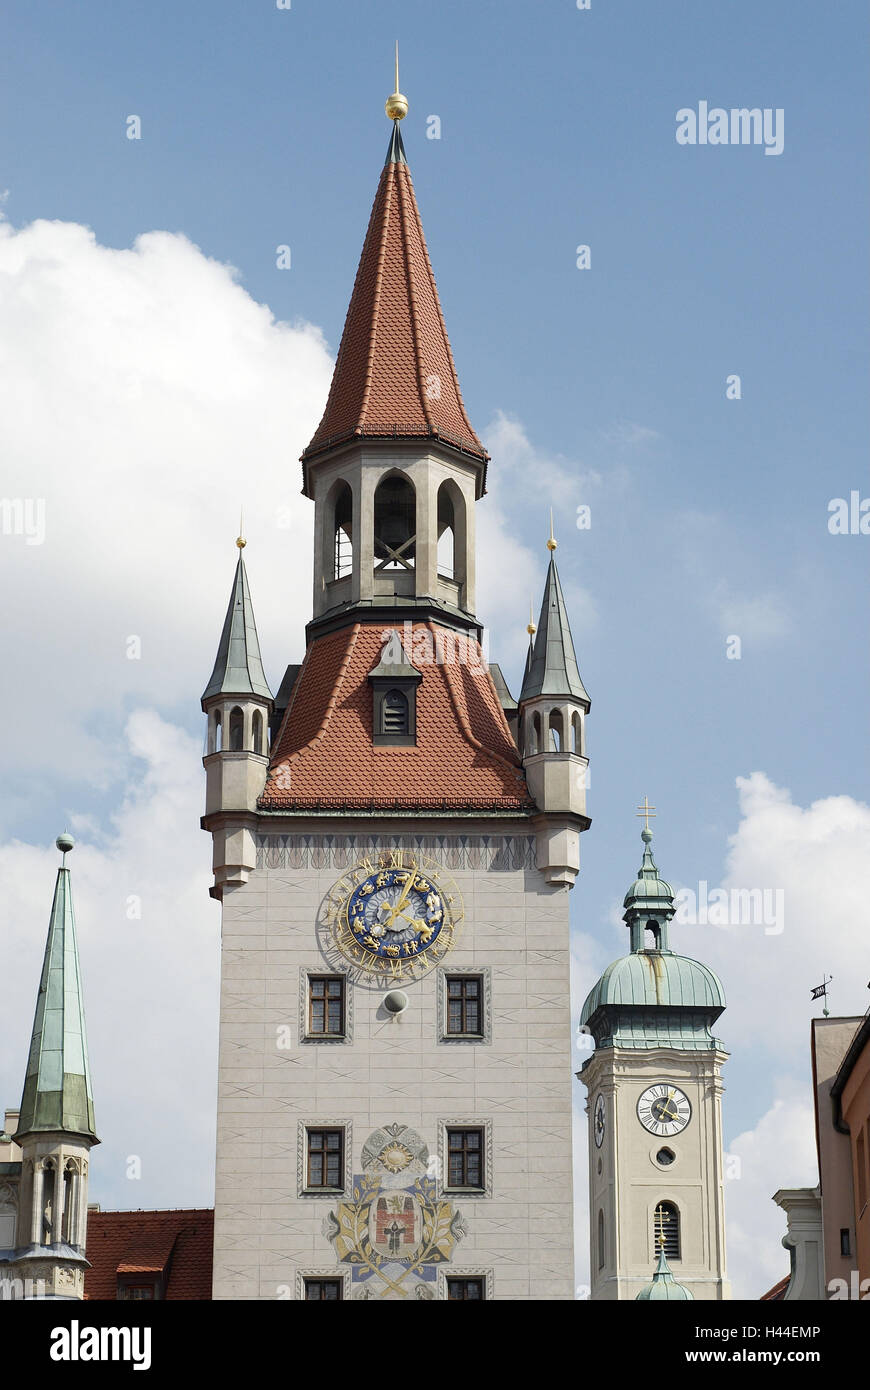 Altes Rathaus, Rat Angriff, Kirchturm, Uhren, Himmel, Wolken, Deutschland, Bayern, München, Stockfoto